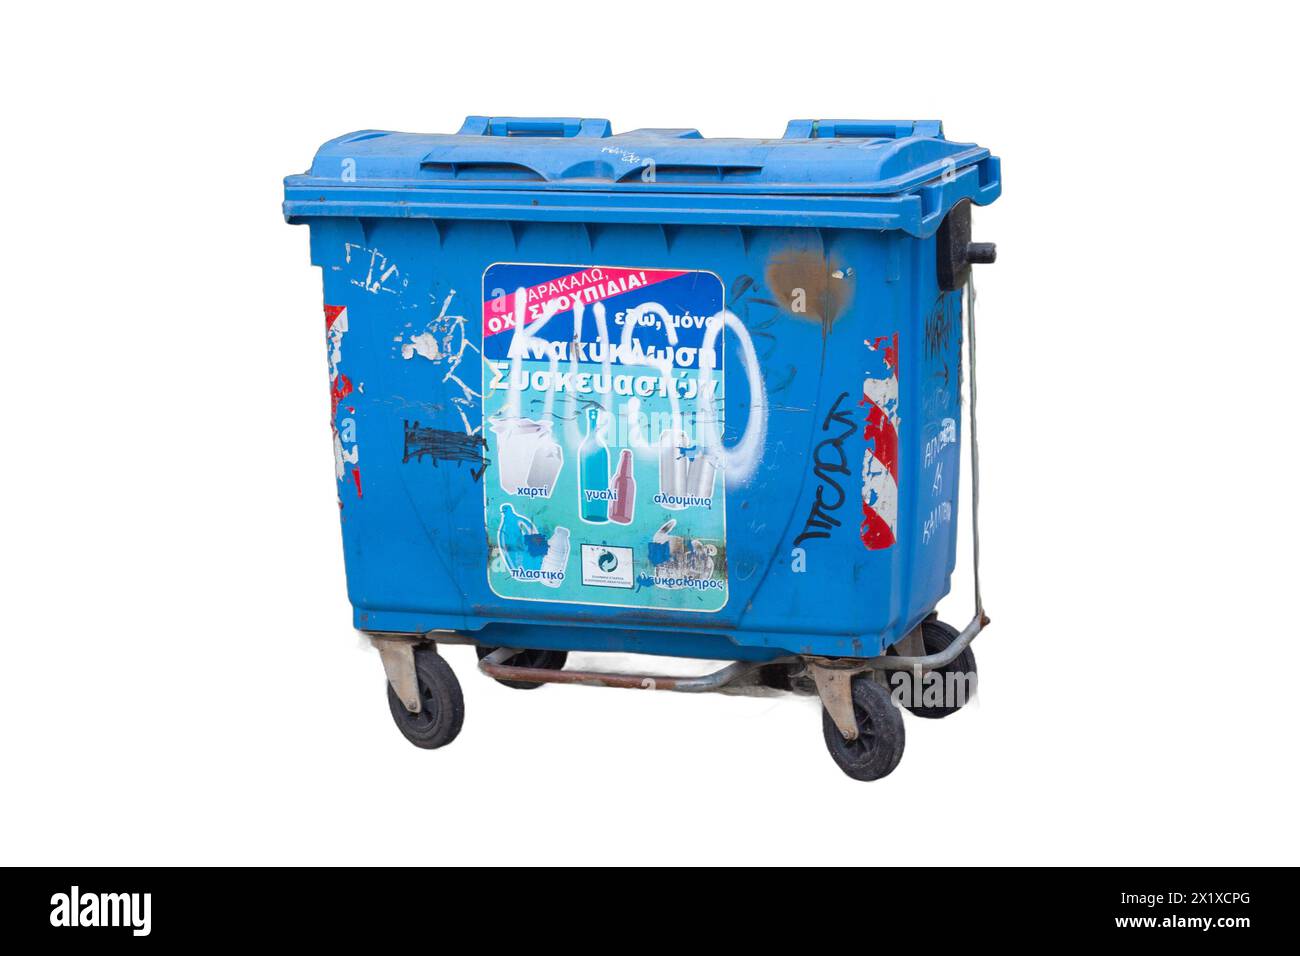 Contenitori per rifiuti isolati in vari colori e stili, pronti per progetti di gestione dei rifiuti, campagne ambientali e scene urbane Foto Stock